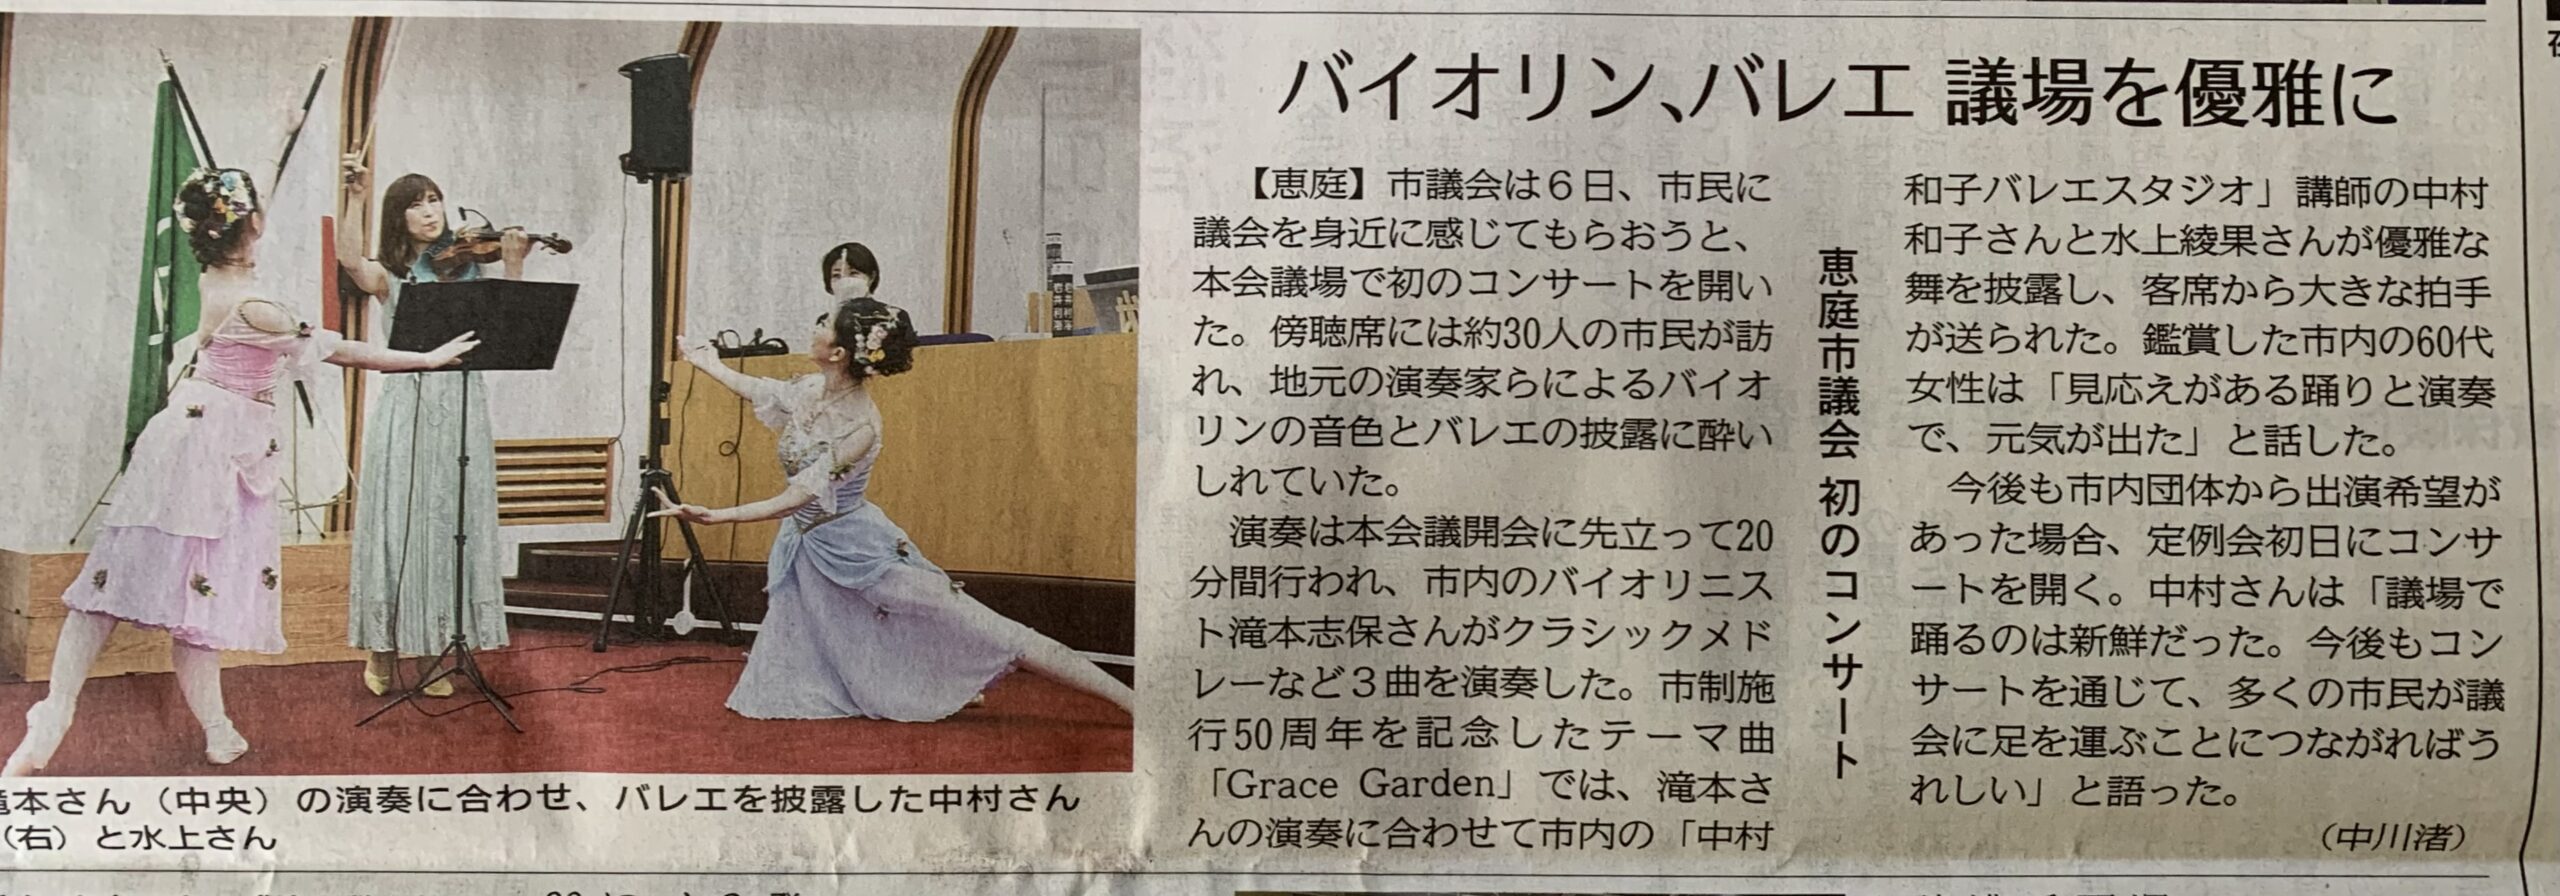 「中村和子バレエスタジオ」中村和子さん・水上綾果さんが議場コンサートに出演しました